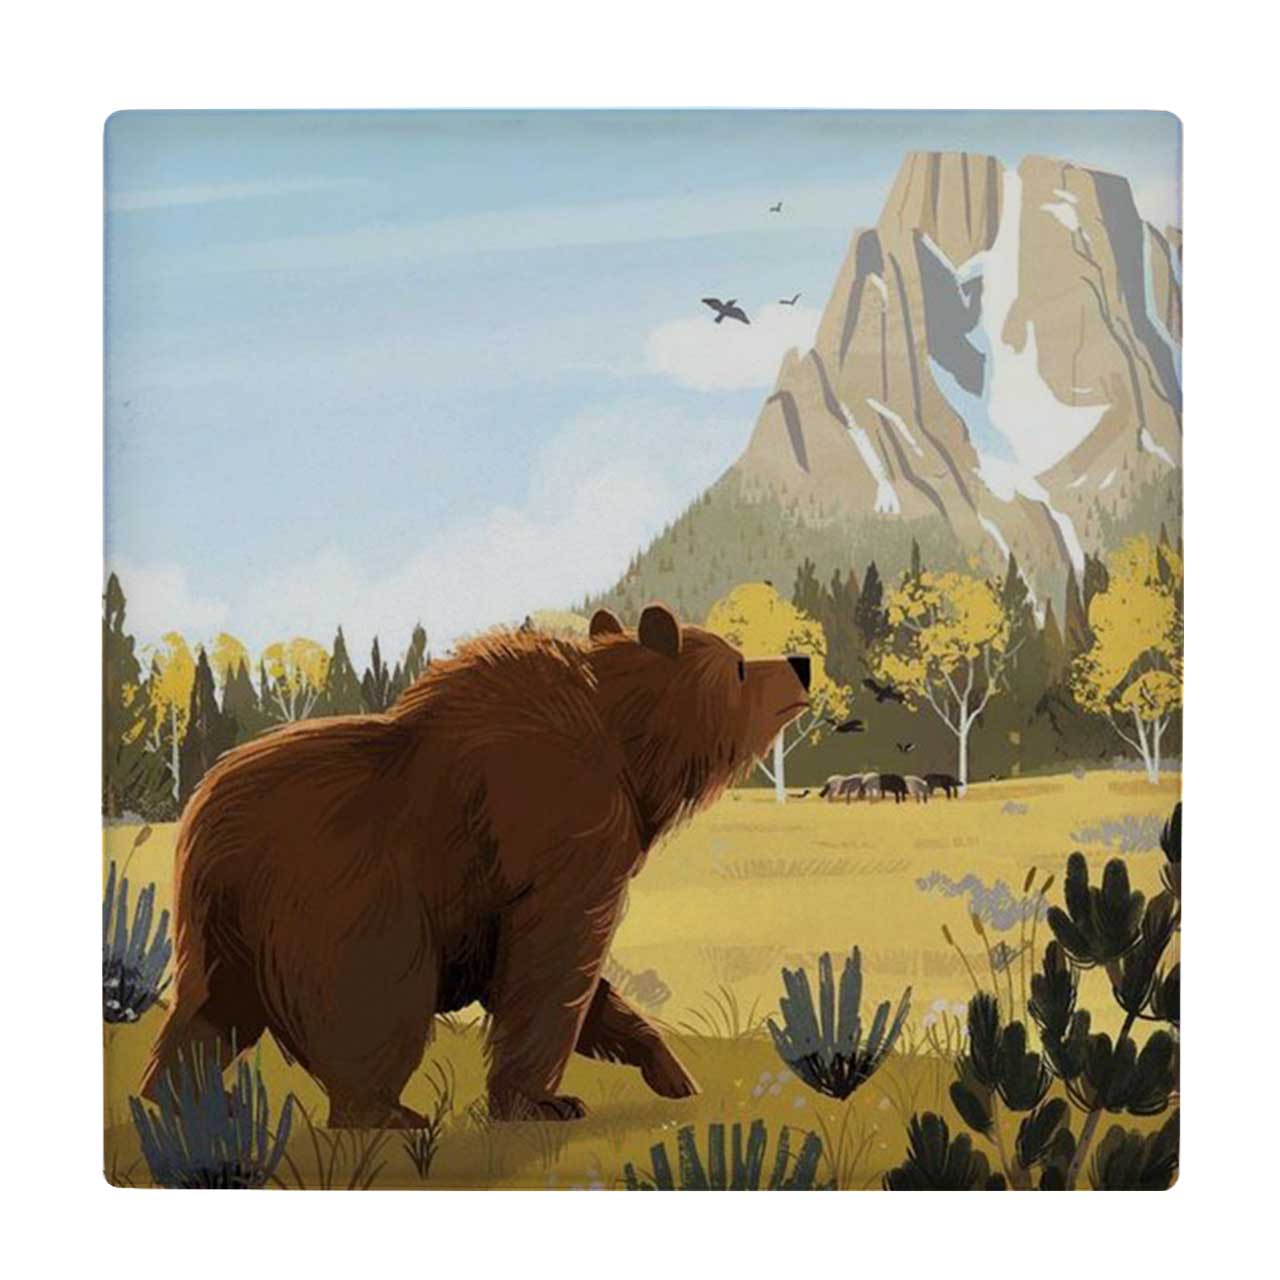  زیر لیوانی طرح نقاشی خرس کوهستان کد 6167466_5529